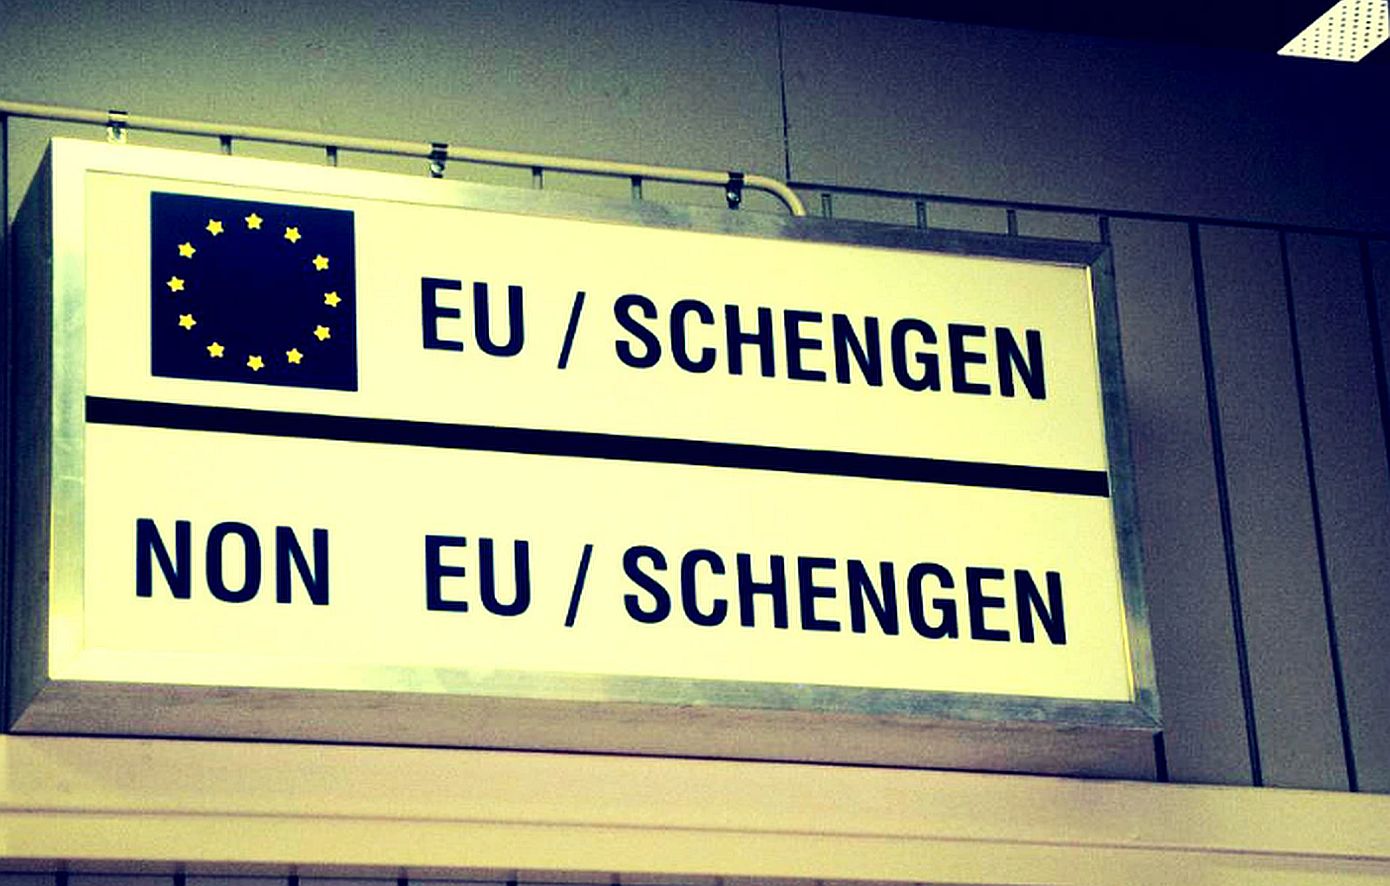 Ρουμανία και Βουλγαρία μπήκαν στη Ζώνη Σένγκεν με έναν περιορισμό μετά από 13 χρόνια αναμονής